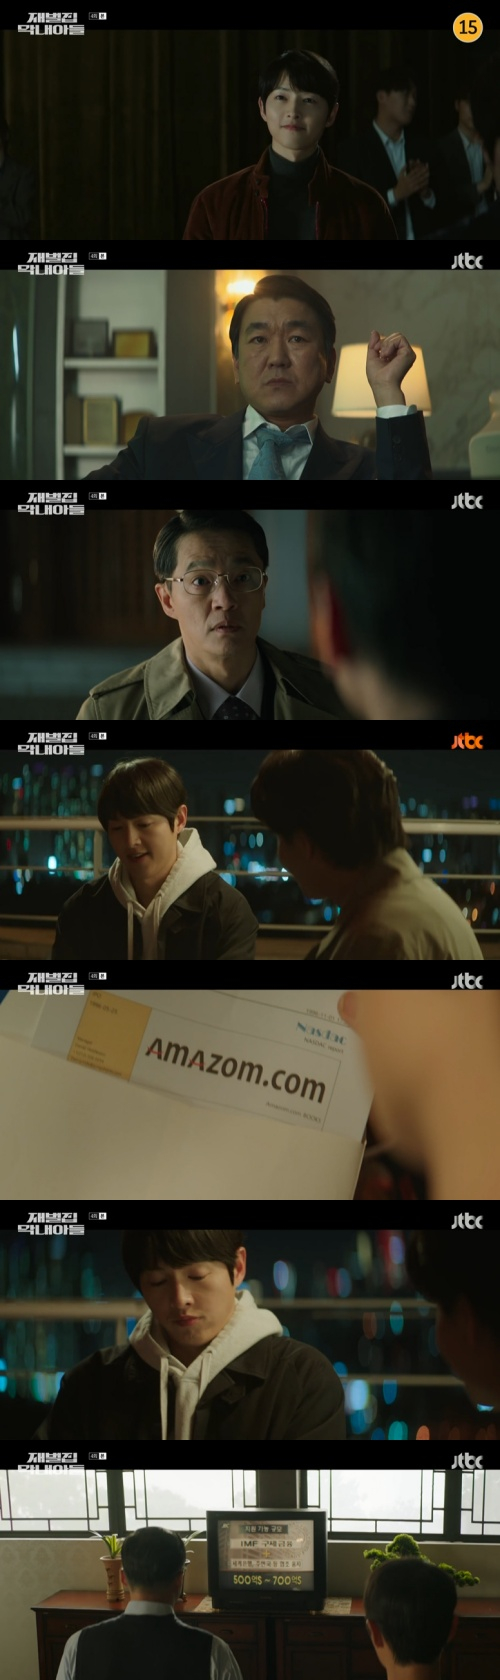 /사진=25일 JTBC 금토일드라마 '재벌집 막내아들' 방송 화면 캡쳐